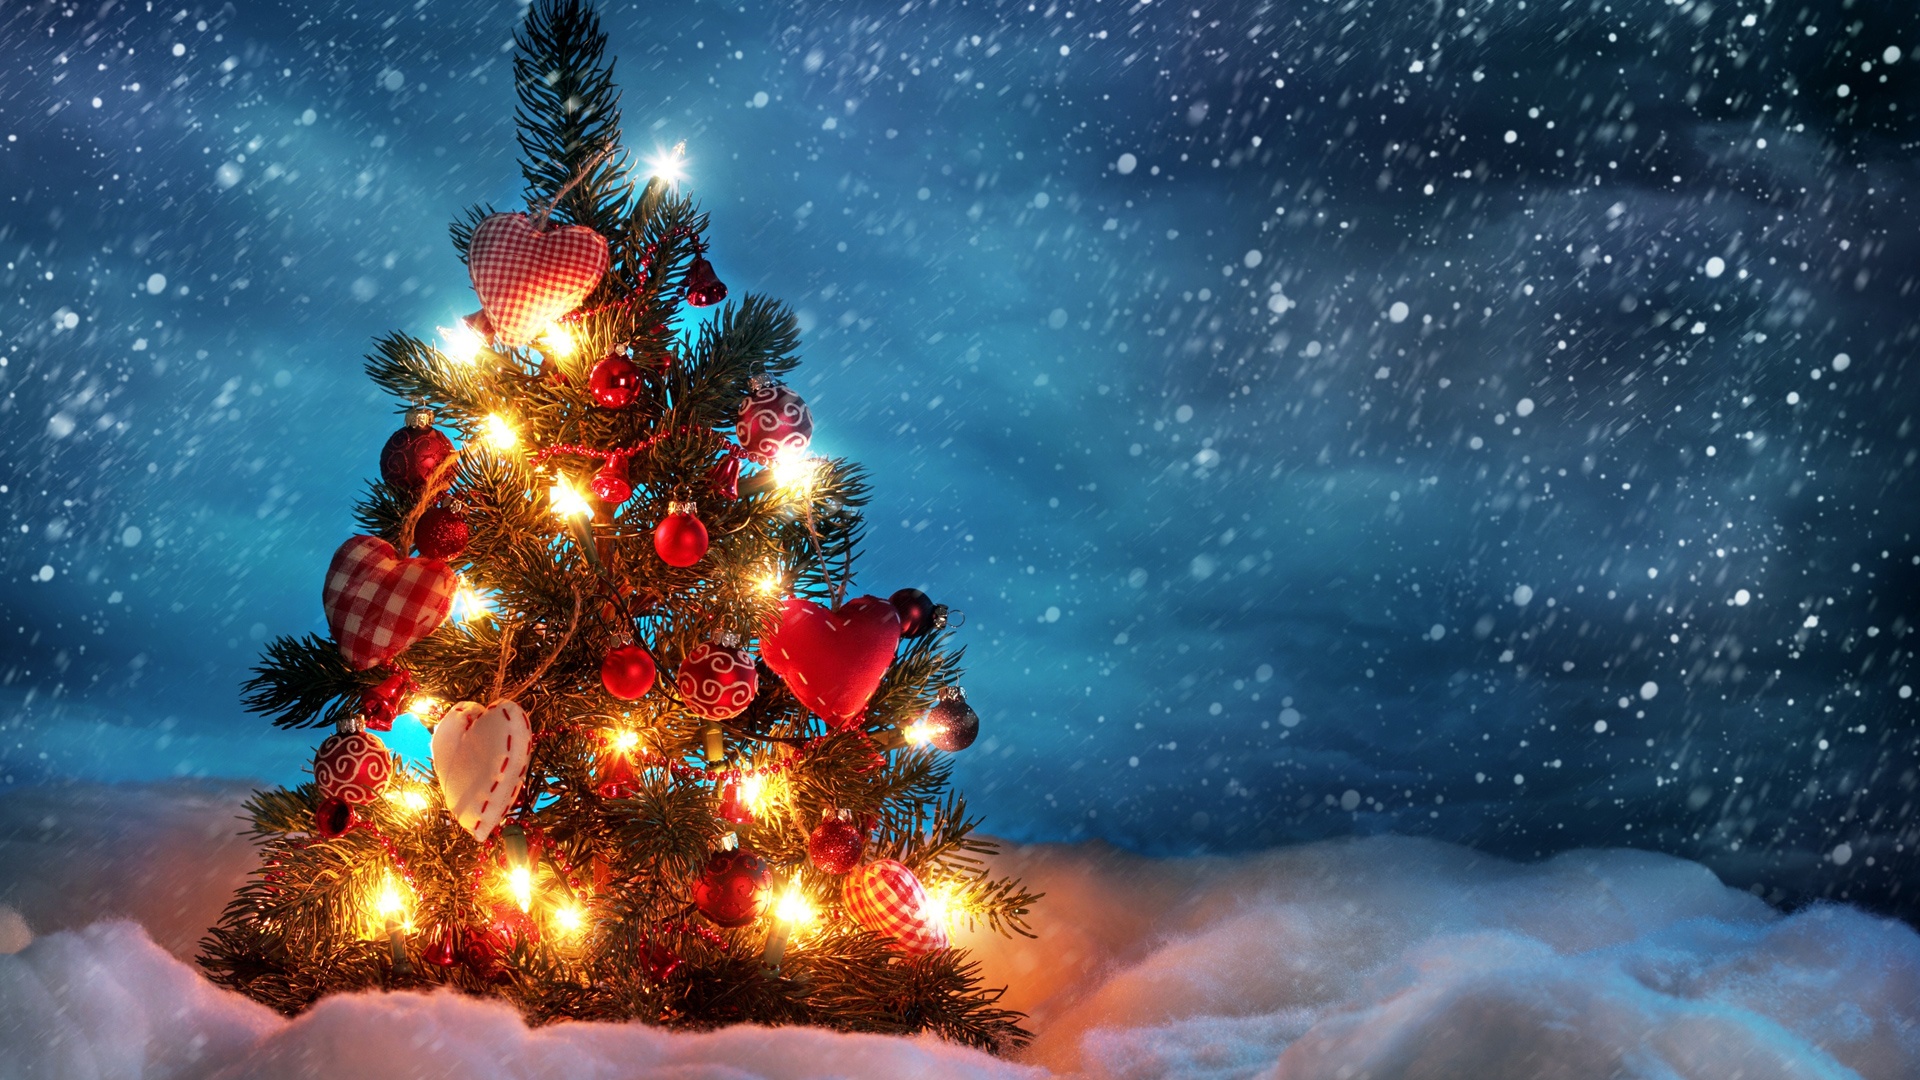 Hình nền HD phong cảnh Giáng sinh sẽ khiến cho bạn cảm thấy như đang sống trong một câu chuyện cổ tích. Những cảnh tuyết rơi, cây thông và hộp quà đầy ắp sẽ mang đến cho bạn nét đẹp truyền thống của mùa Giáng sinh. Hãy trang hoàng cho máy tính của bạn để cho ra đời những bức hình nền đầy ấn tượng nhất nhé.